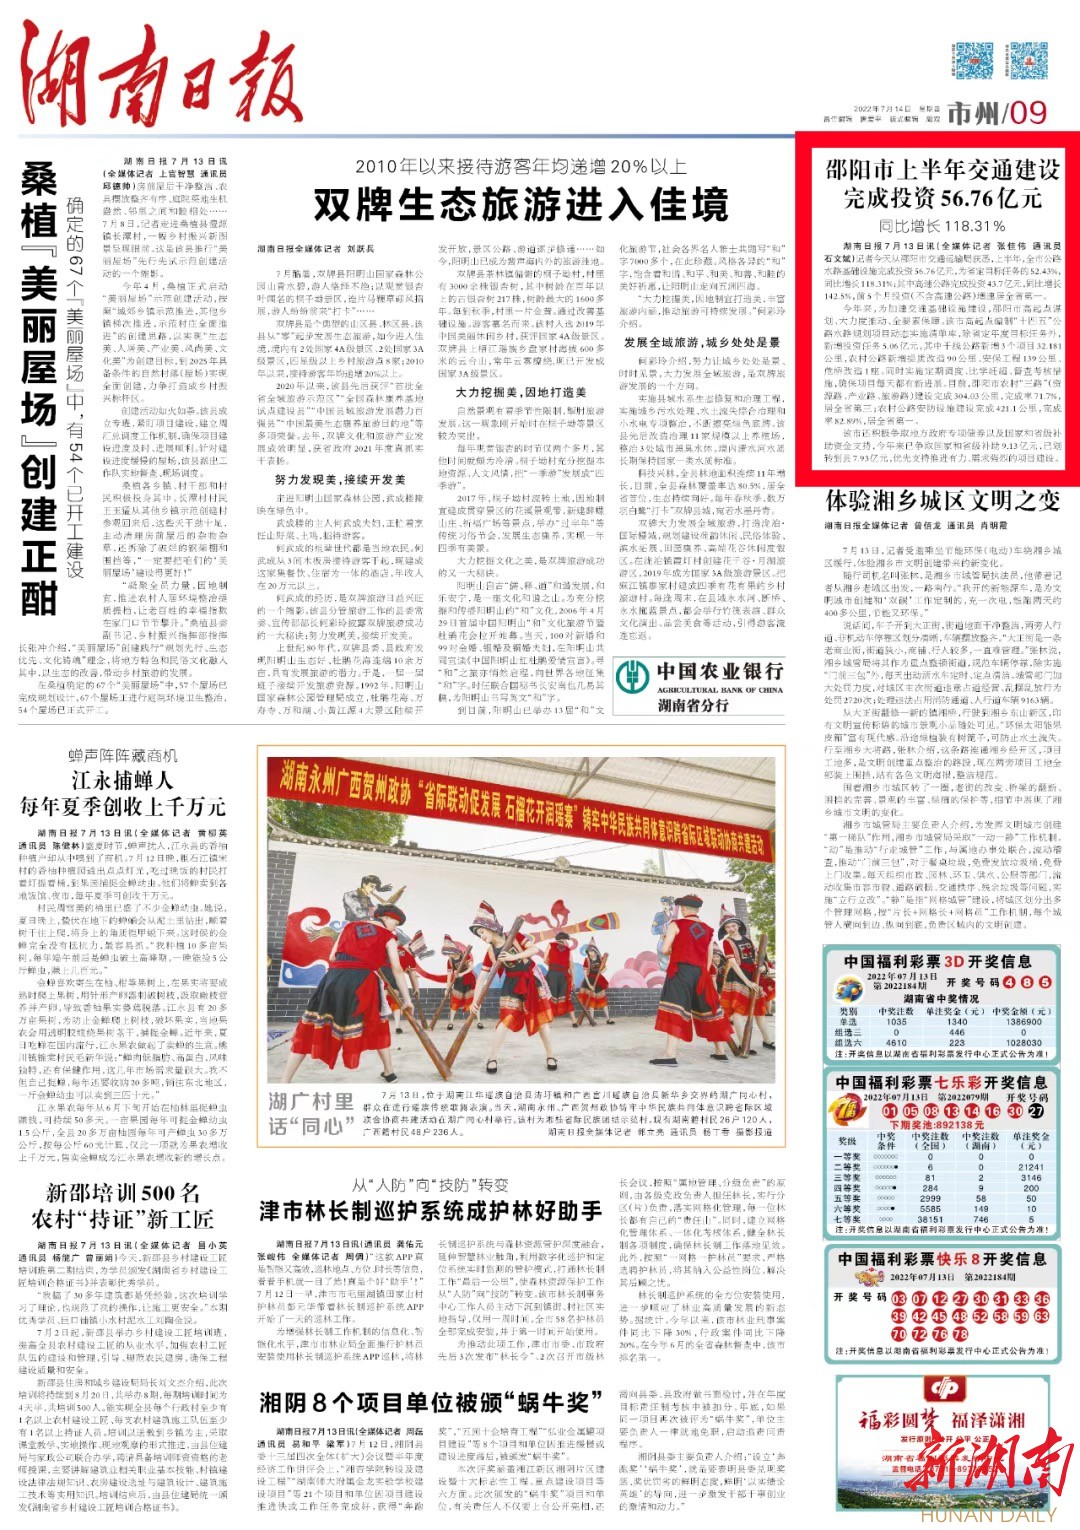 湖南日报｜邵阳市上半年交通建设完成投资56.76亿元 同比增长118.31%